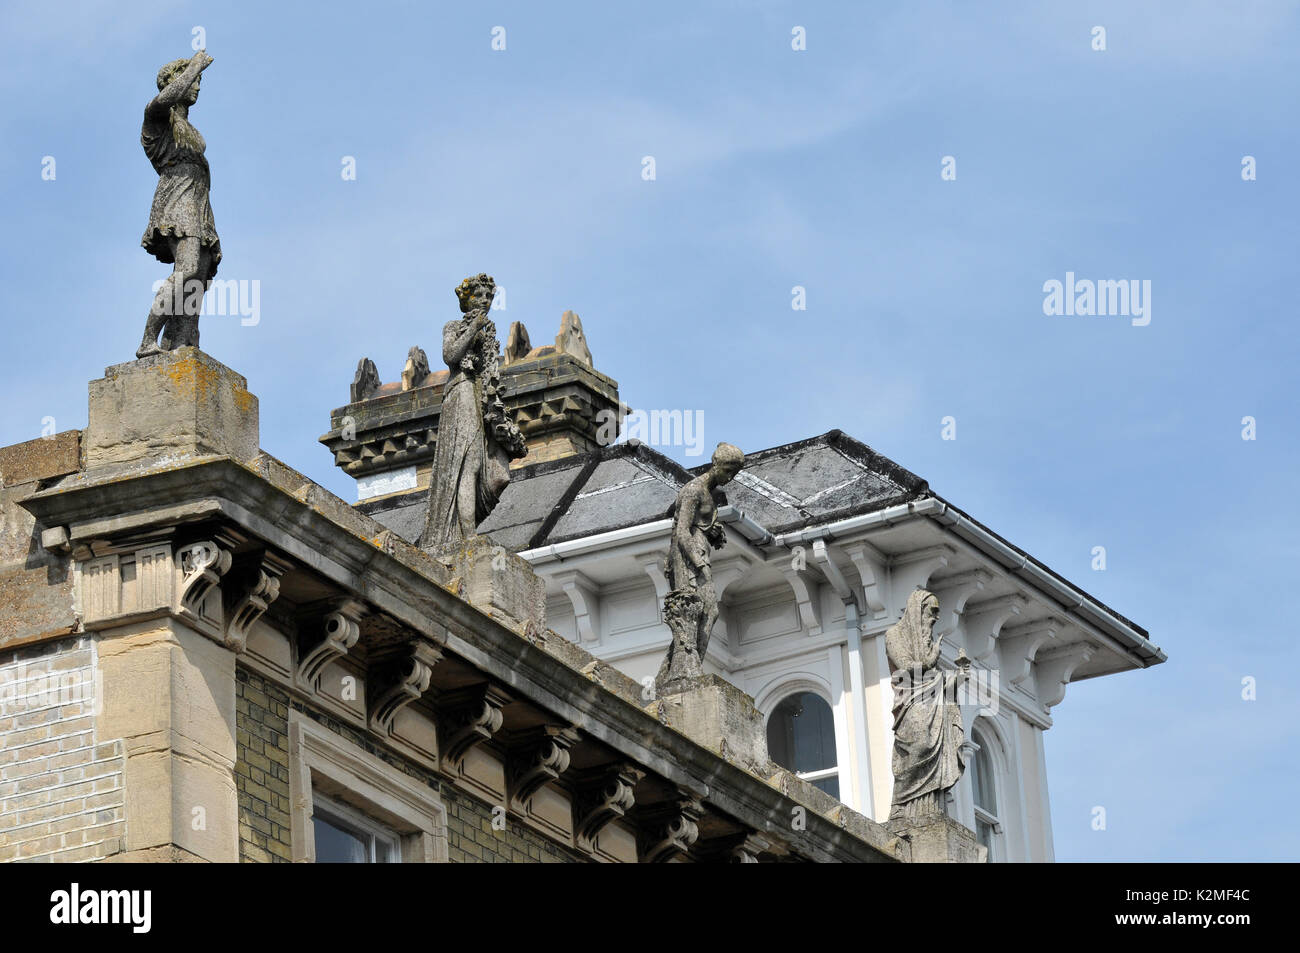 Statues de pierre sur le toit d'un bâtiment foi espérance et charité ou les quatre saisons faites ou sculptée de sculptures en pierre les modèles et les figures Banque D'Images